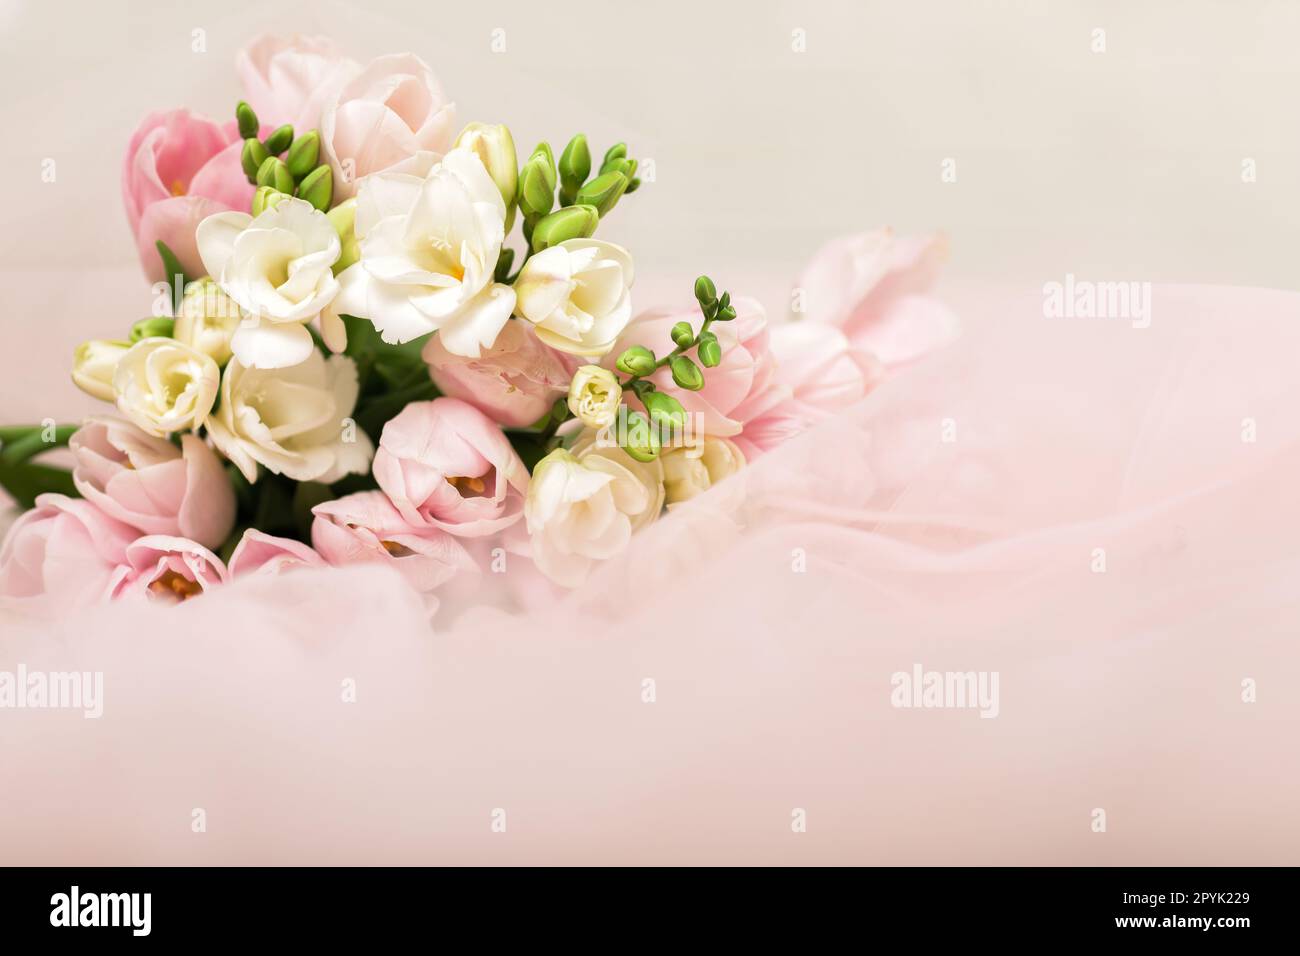 le mariage beau bouquet de tulipes roses Banque D'Images